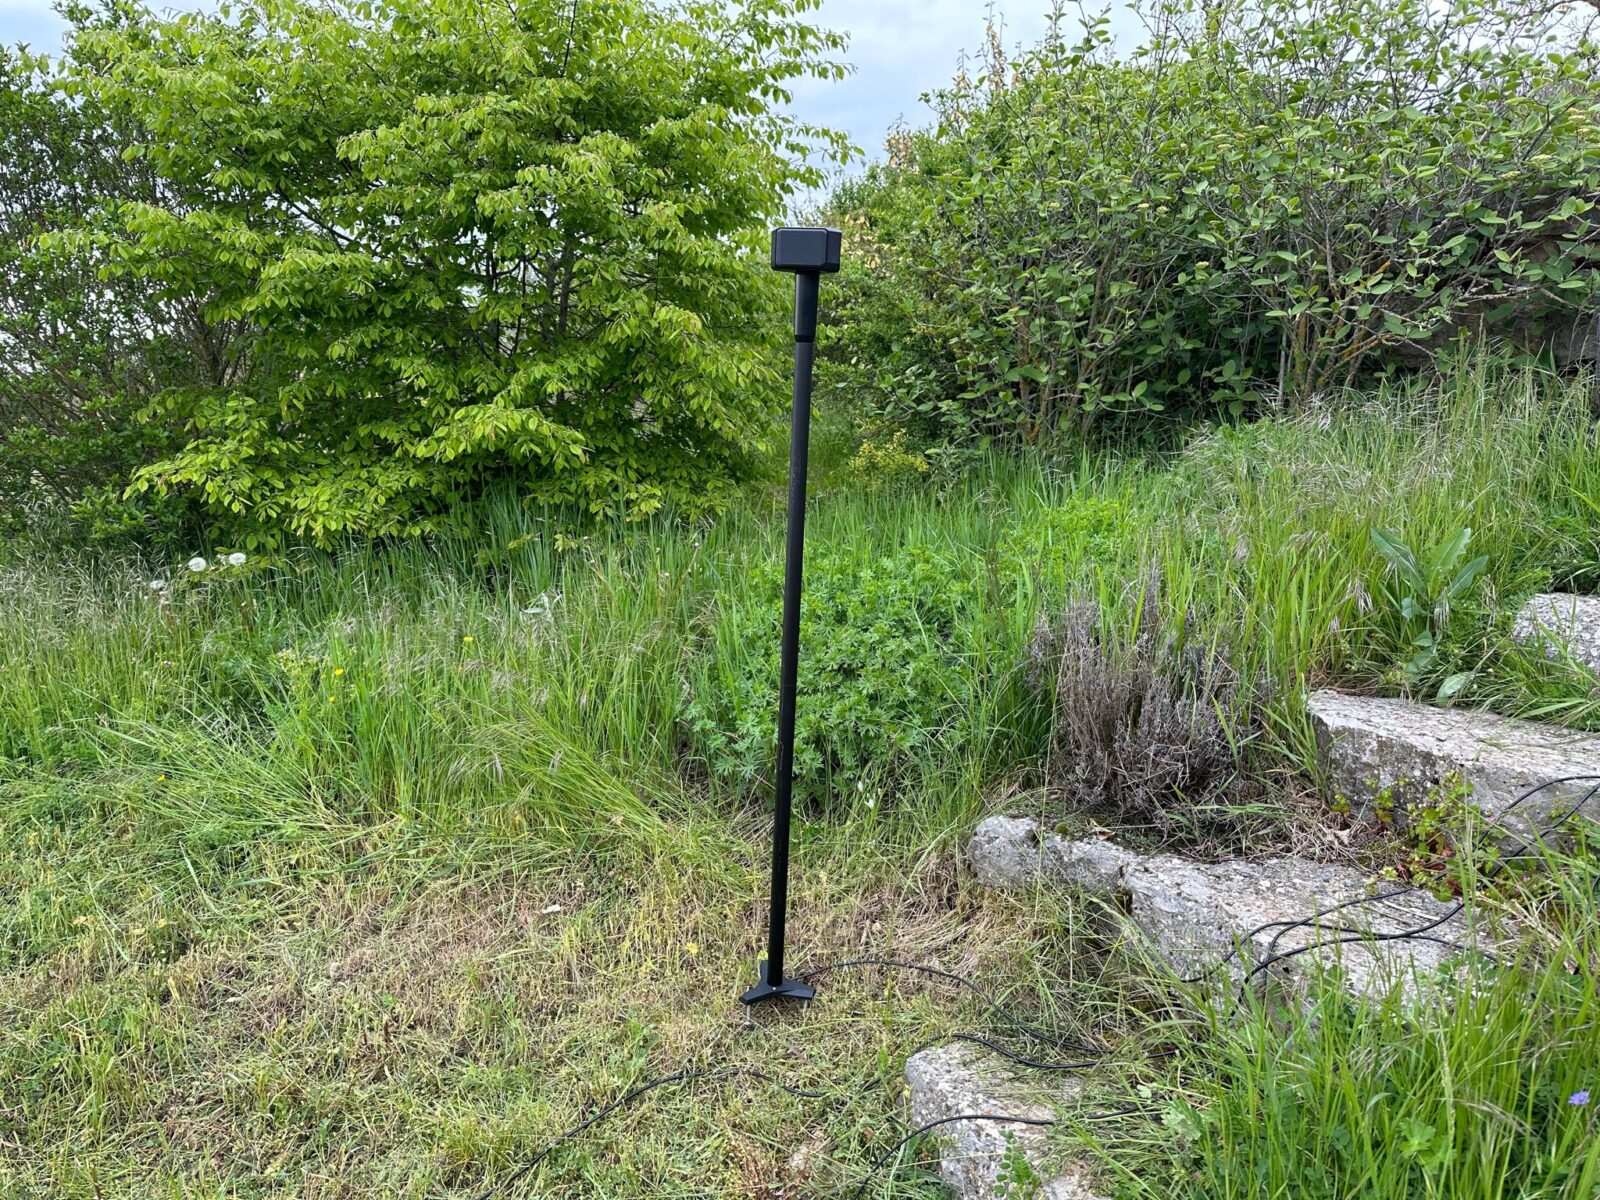 Image de l'antenne GNSS installée dans un jardin verdoyant, montrant son utilisation dans le guidage précis du robot tondeuse EcoFlow Blade